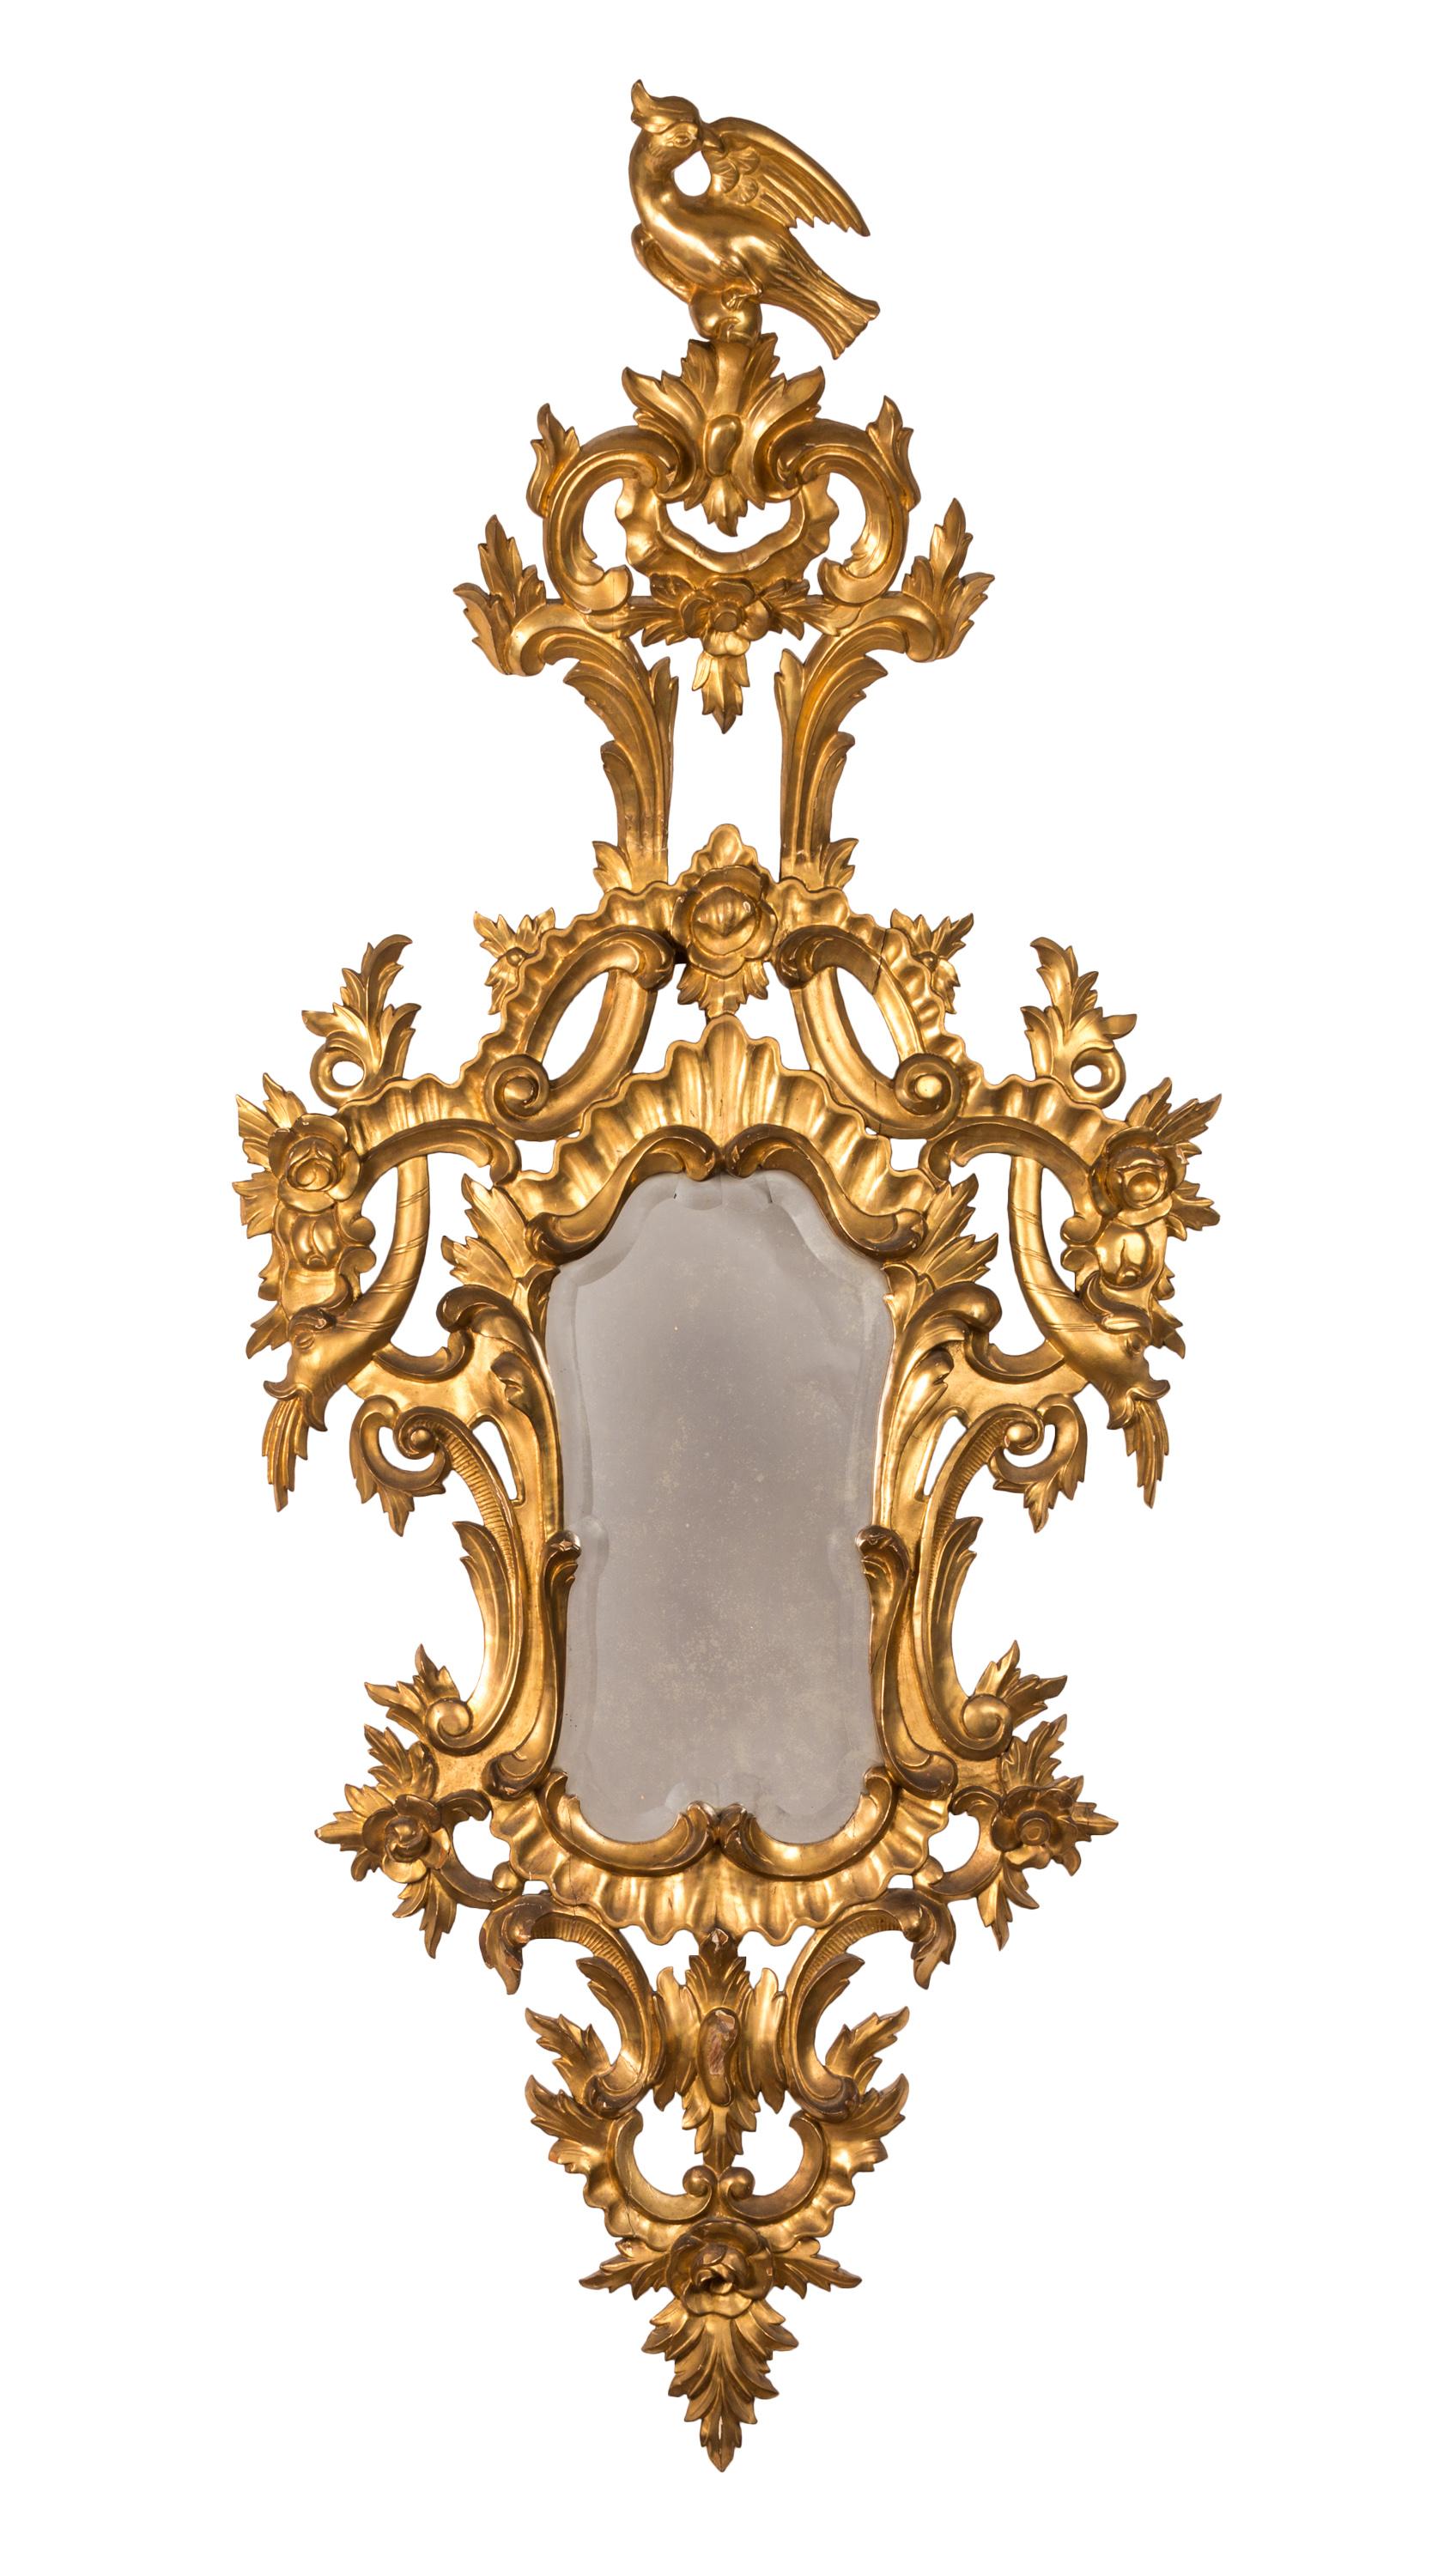 Trio de miroirs rococo français du XVIIIe siècle, avec des cadres en bois finement sculptés et dorés. 
Des éléments décoratifs tels que des plantes et des fleurs, des poissons qui jaillissent et le 